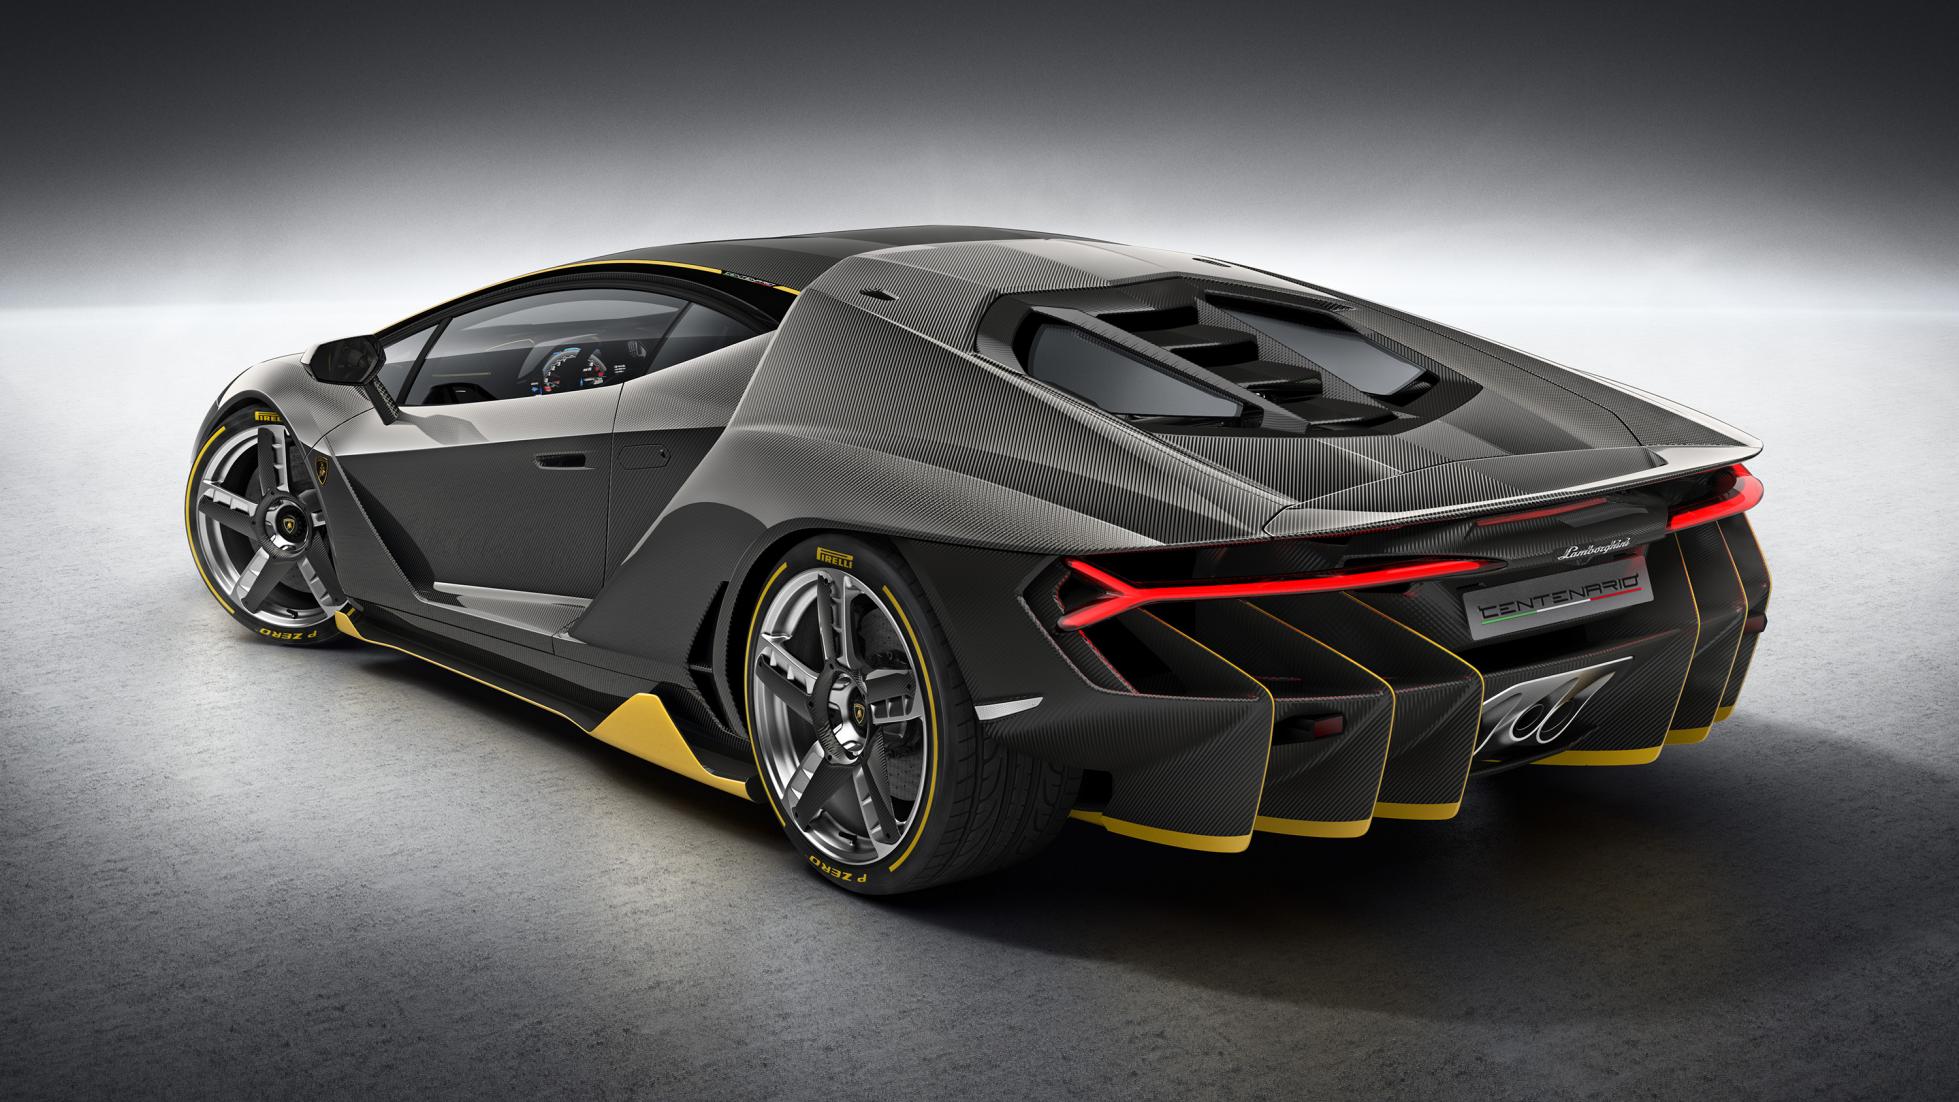 Lamborghini Centenario HD Wallpaper Background Image